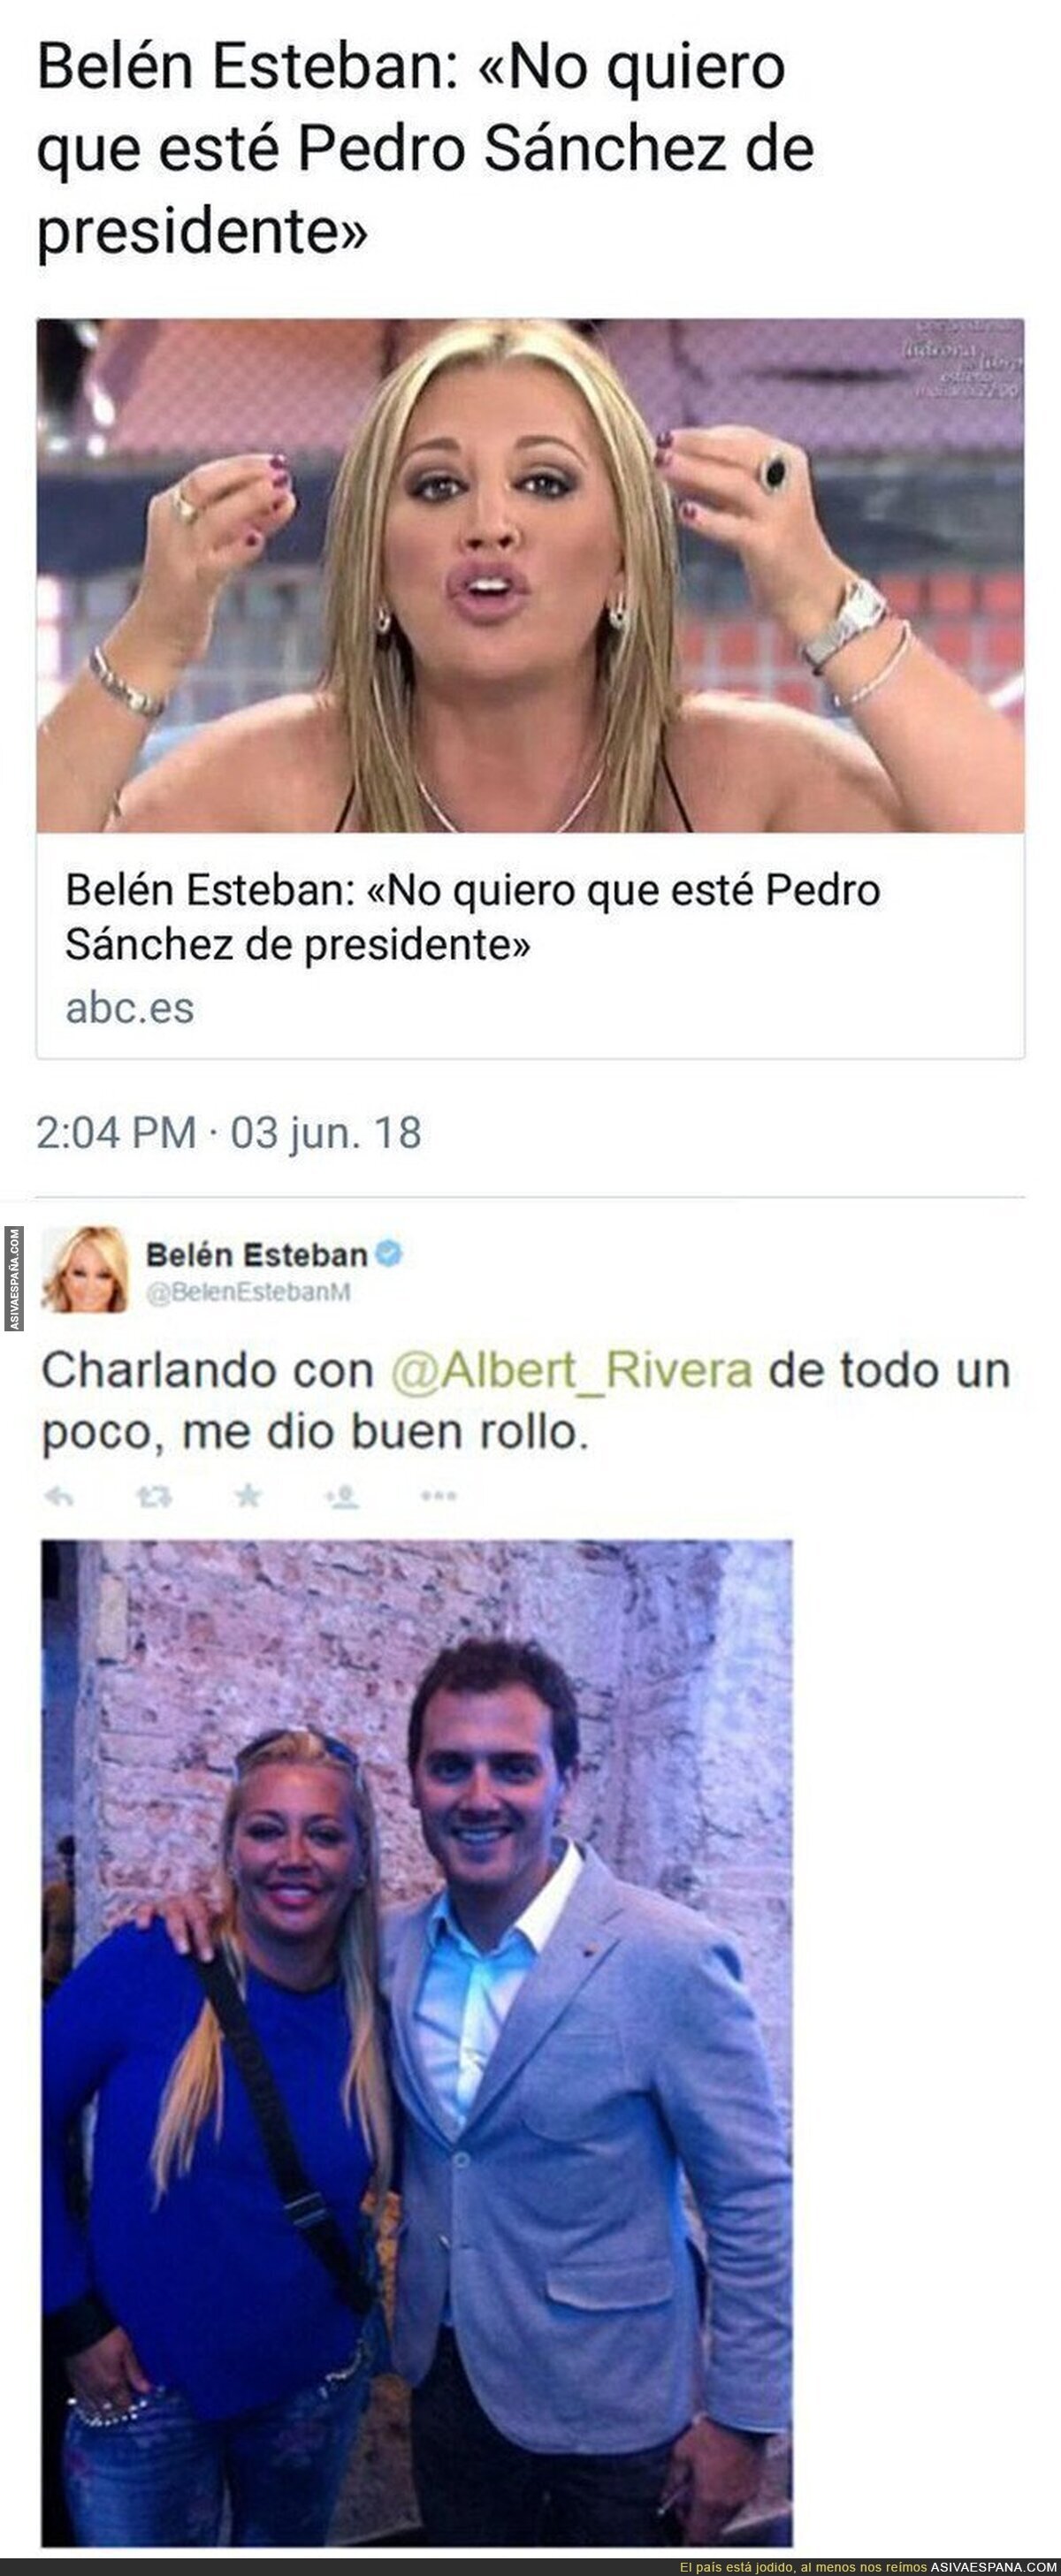 Dos noticias juntas sobre Belén Esteban y Albert Rivera se entienden mejor